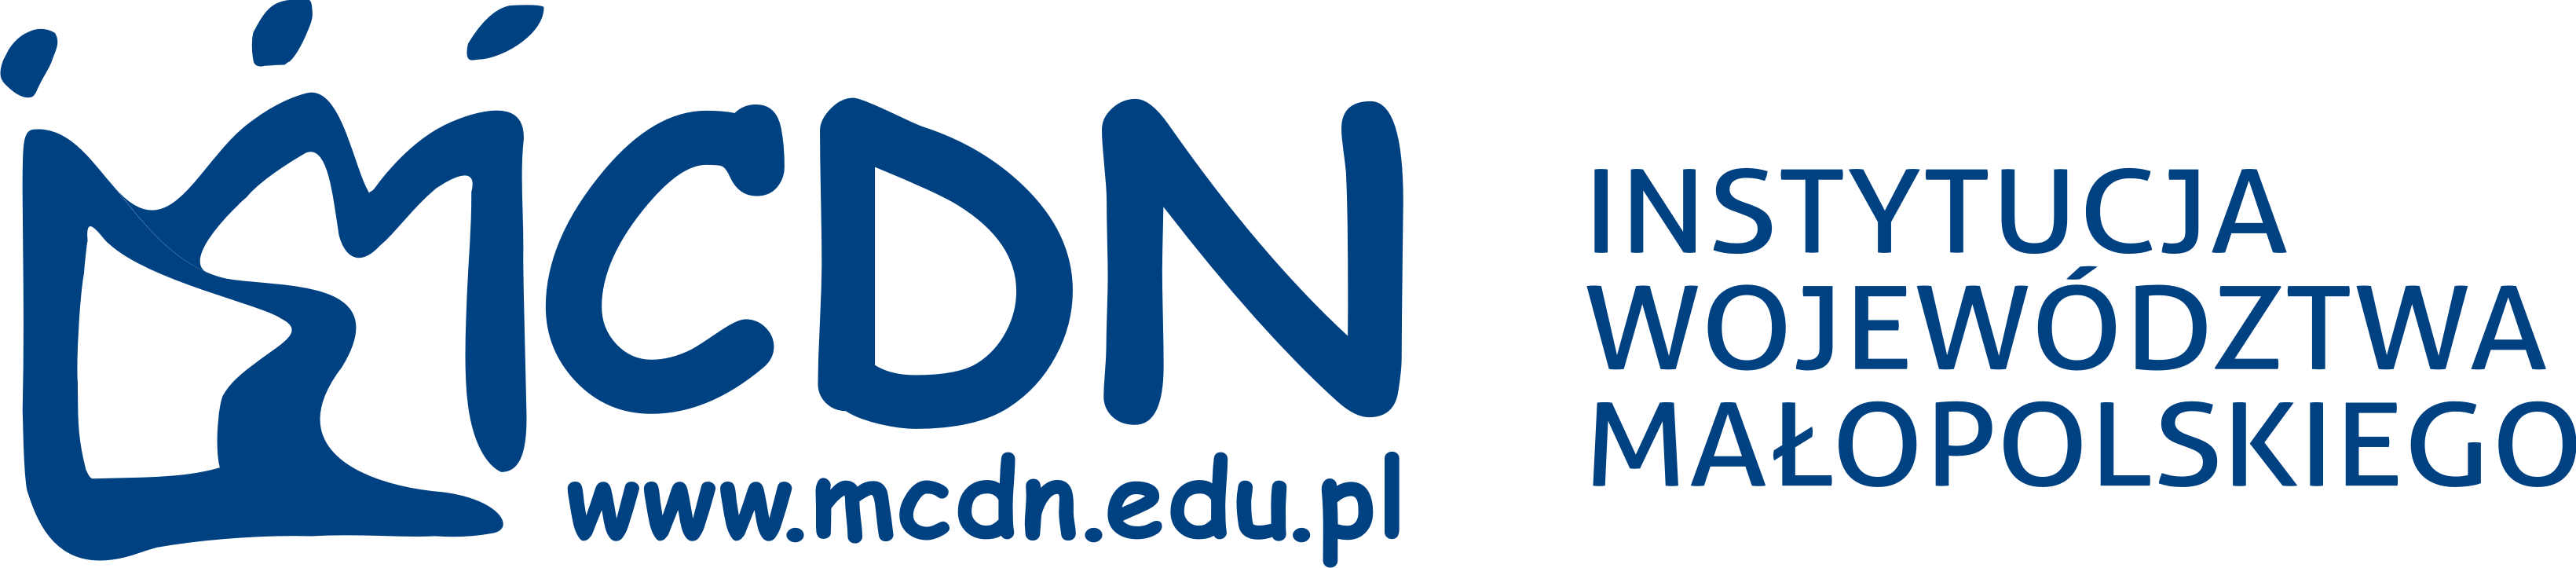 Logo MCDN